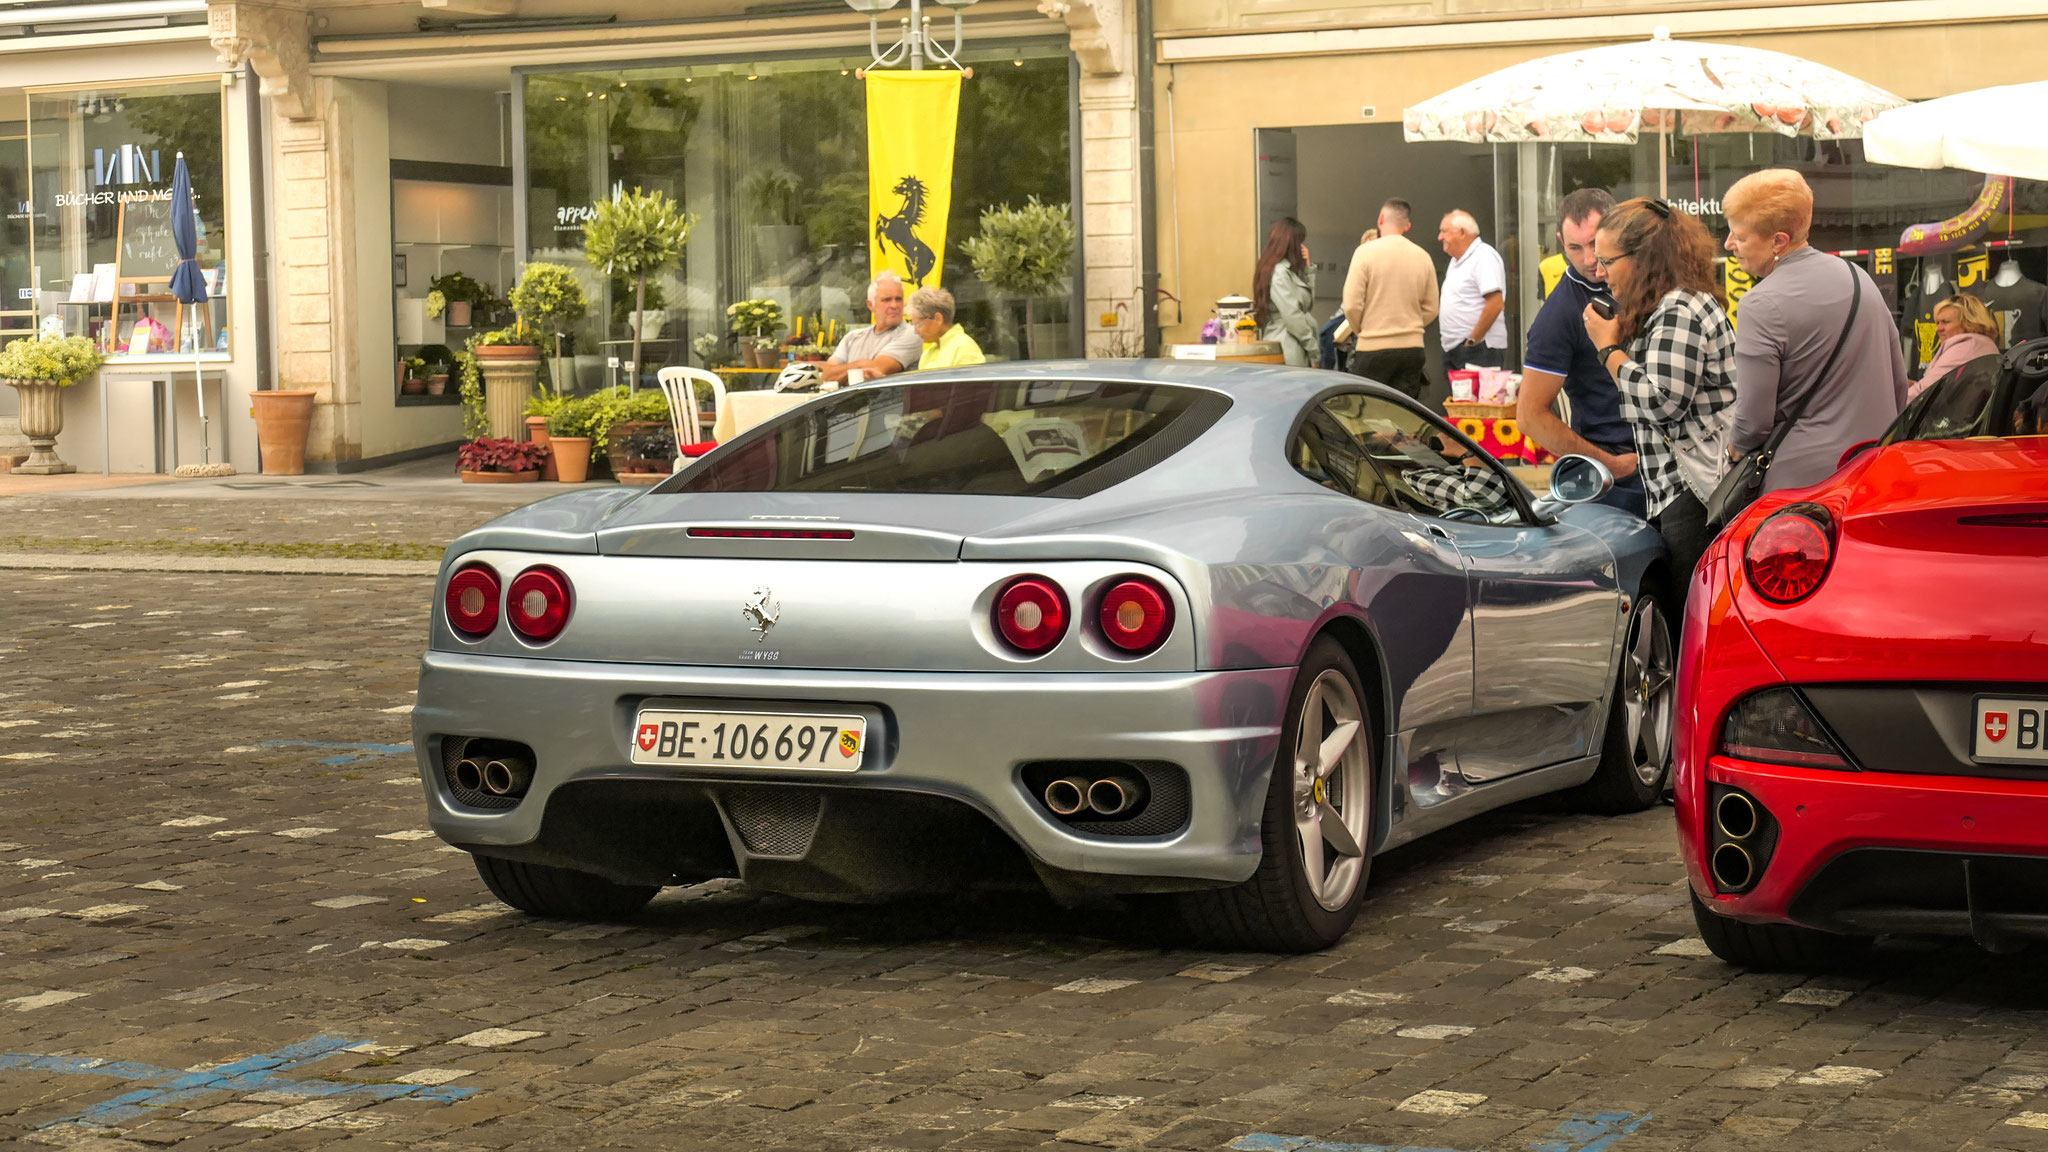 Ferrari 360 Modena - BE106697 (CH)